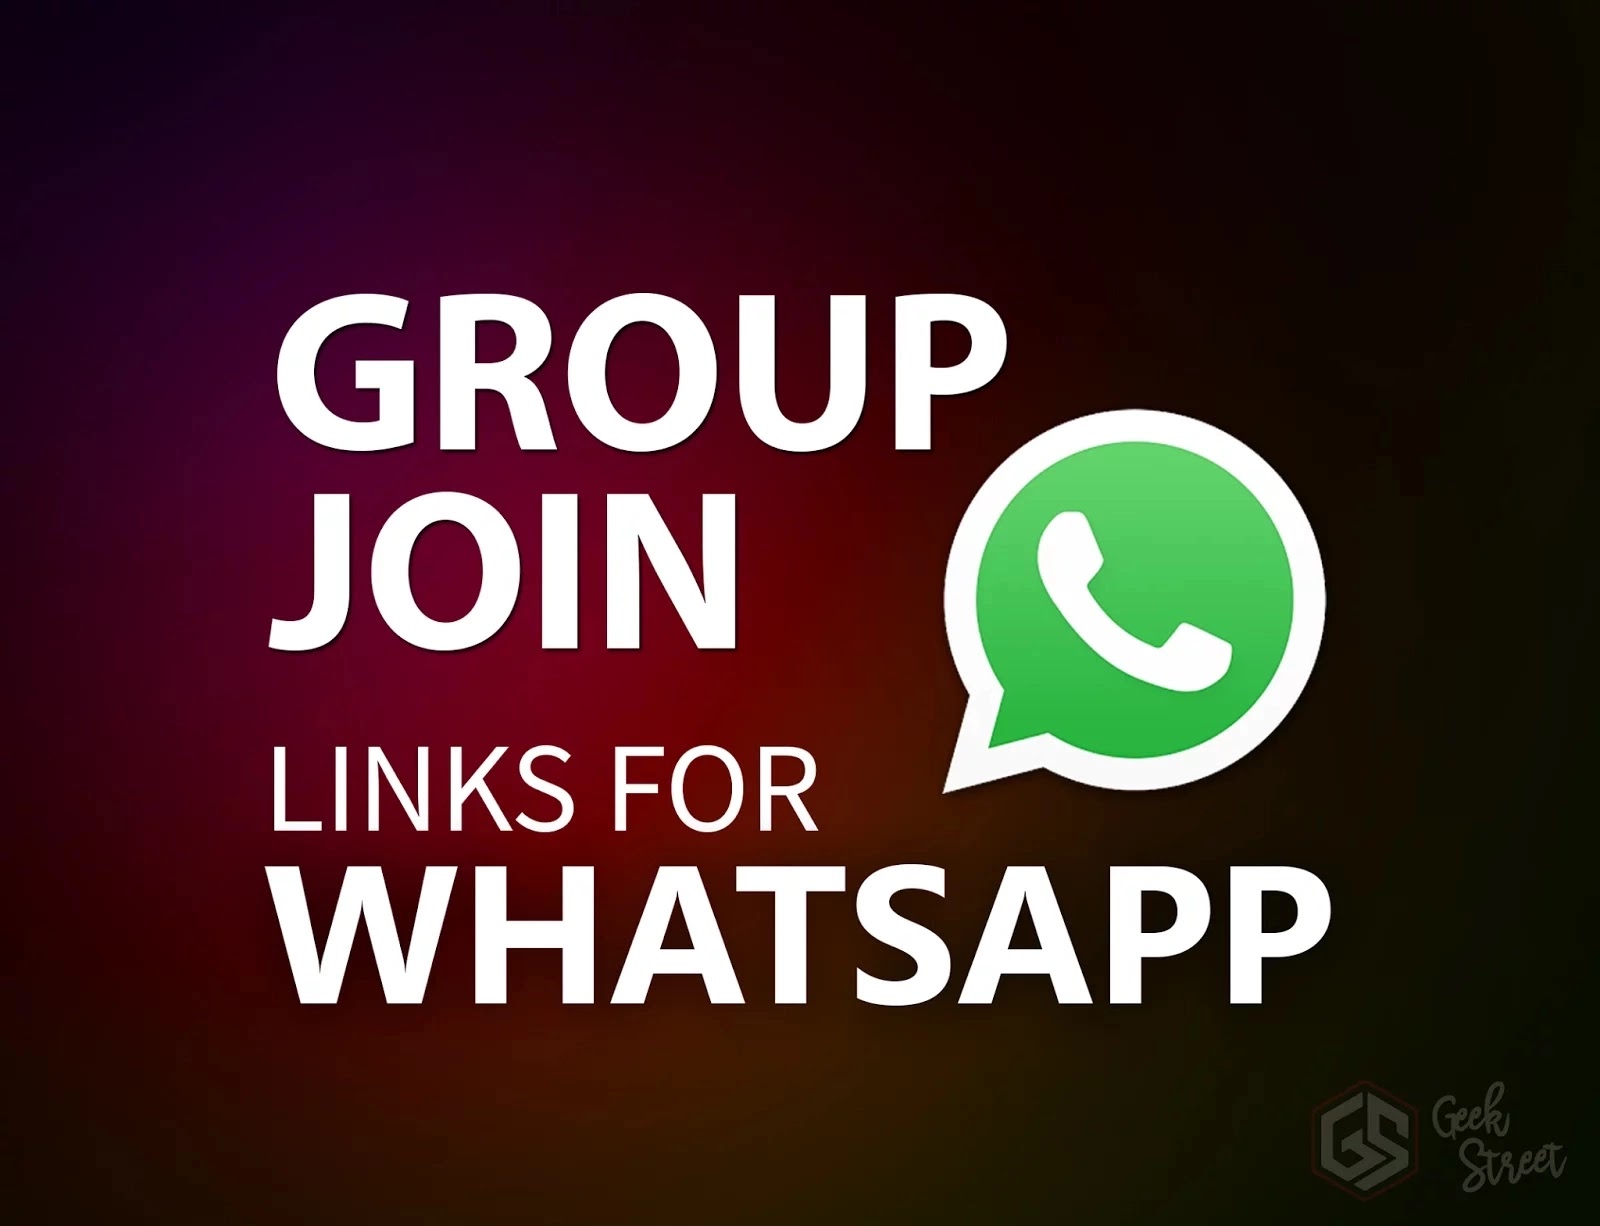 Whatsappbnat whatsapp algeriefemme tunisie Global get